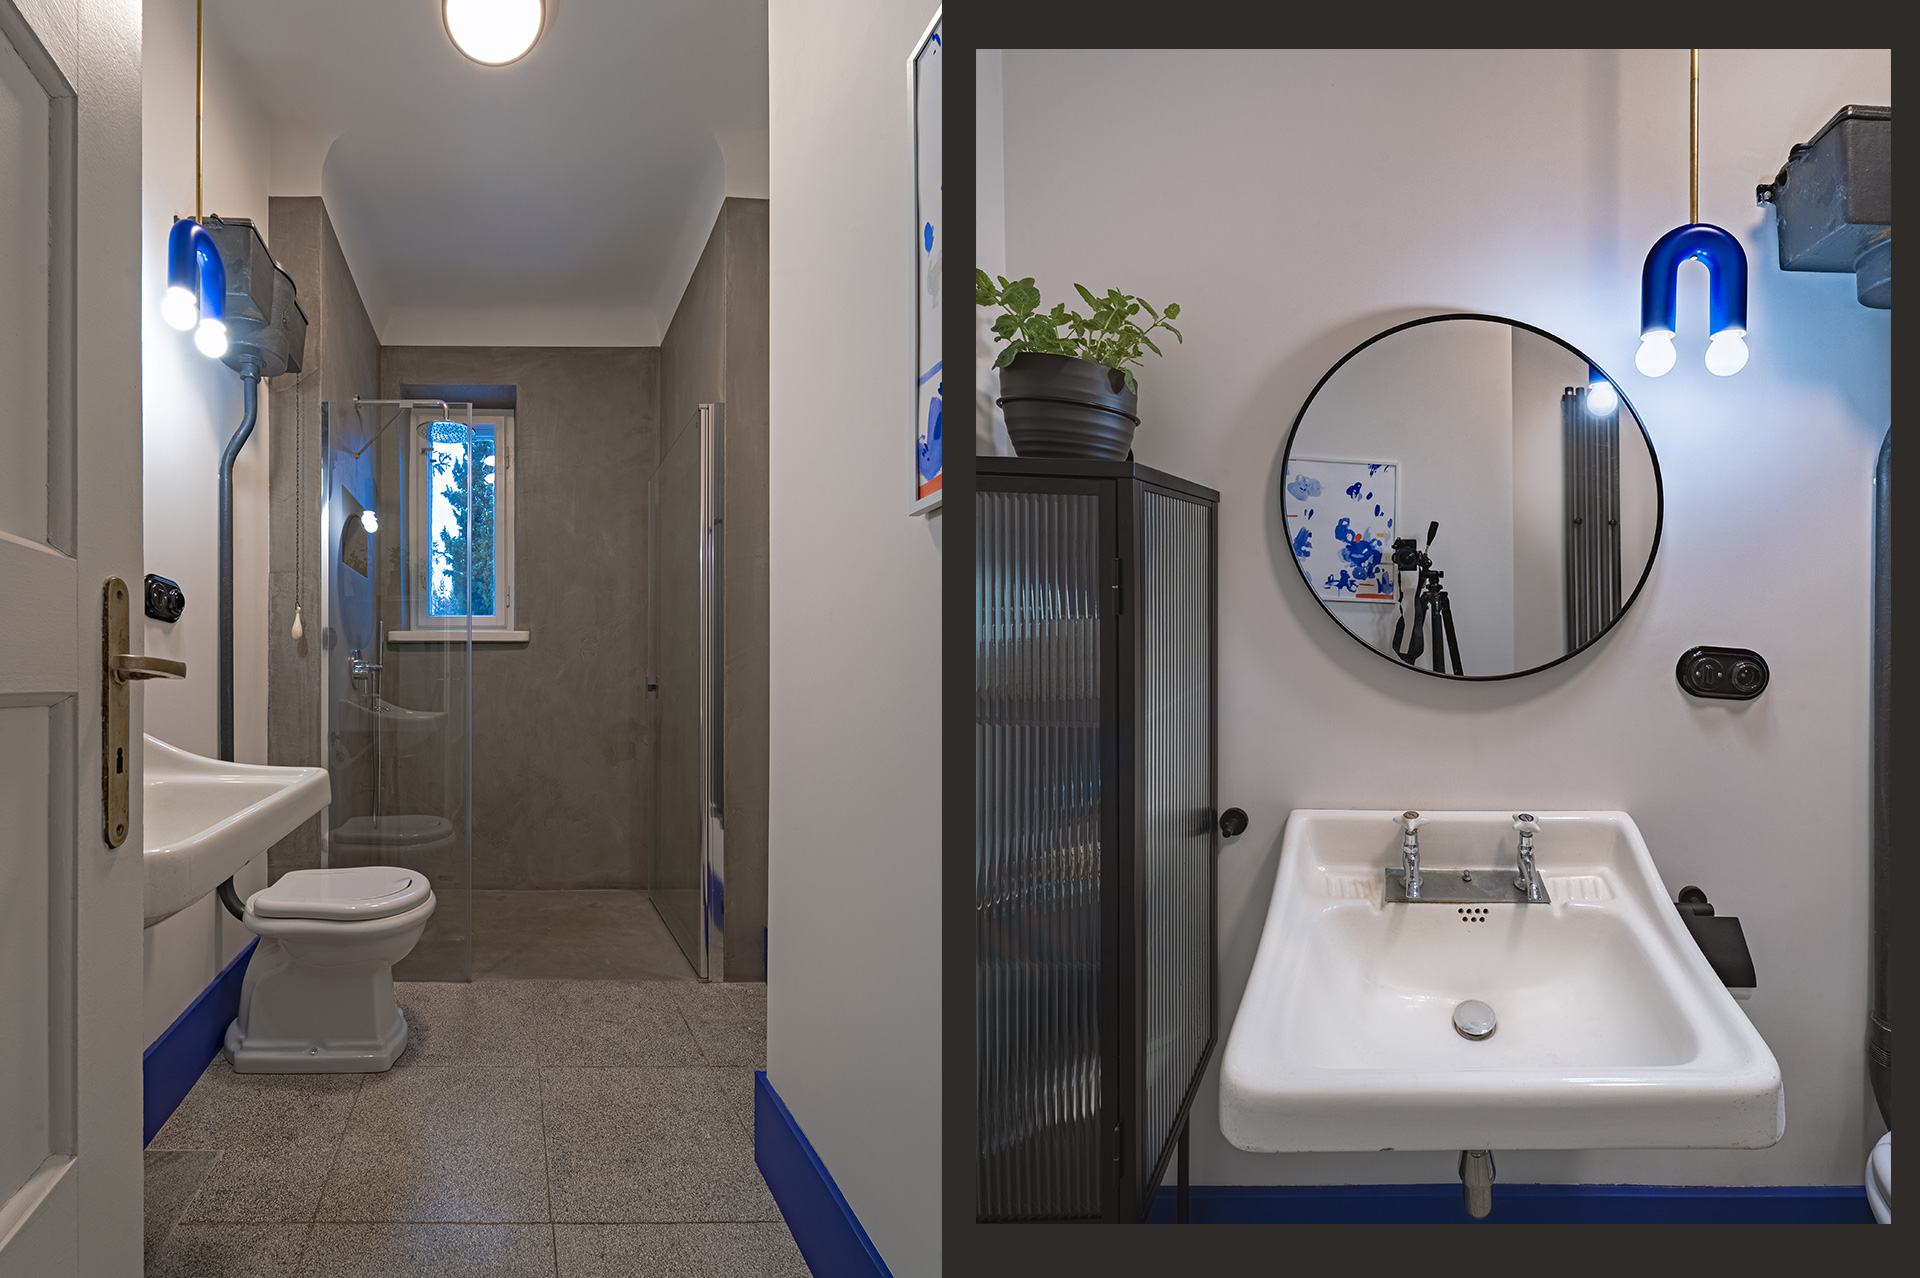 Łazienka na paterze willi – do zachowanych elementów wyposażenia: umywalki i górnopłuku dobrano odpowiednią miskę WC.